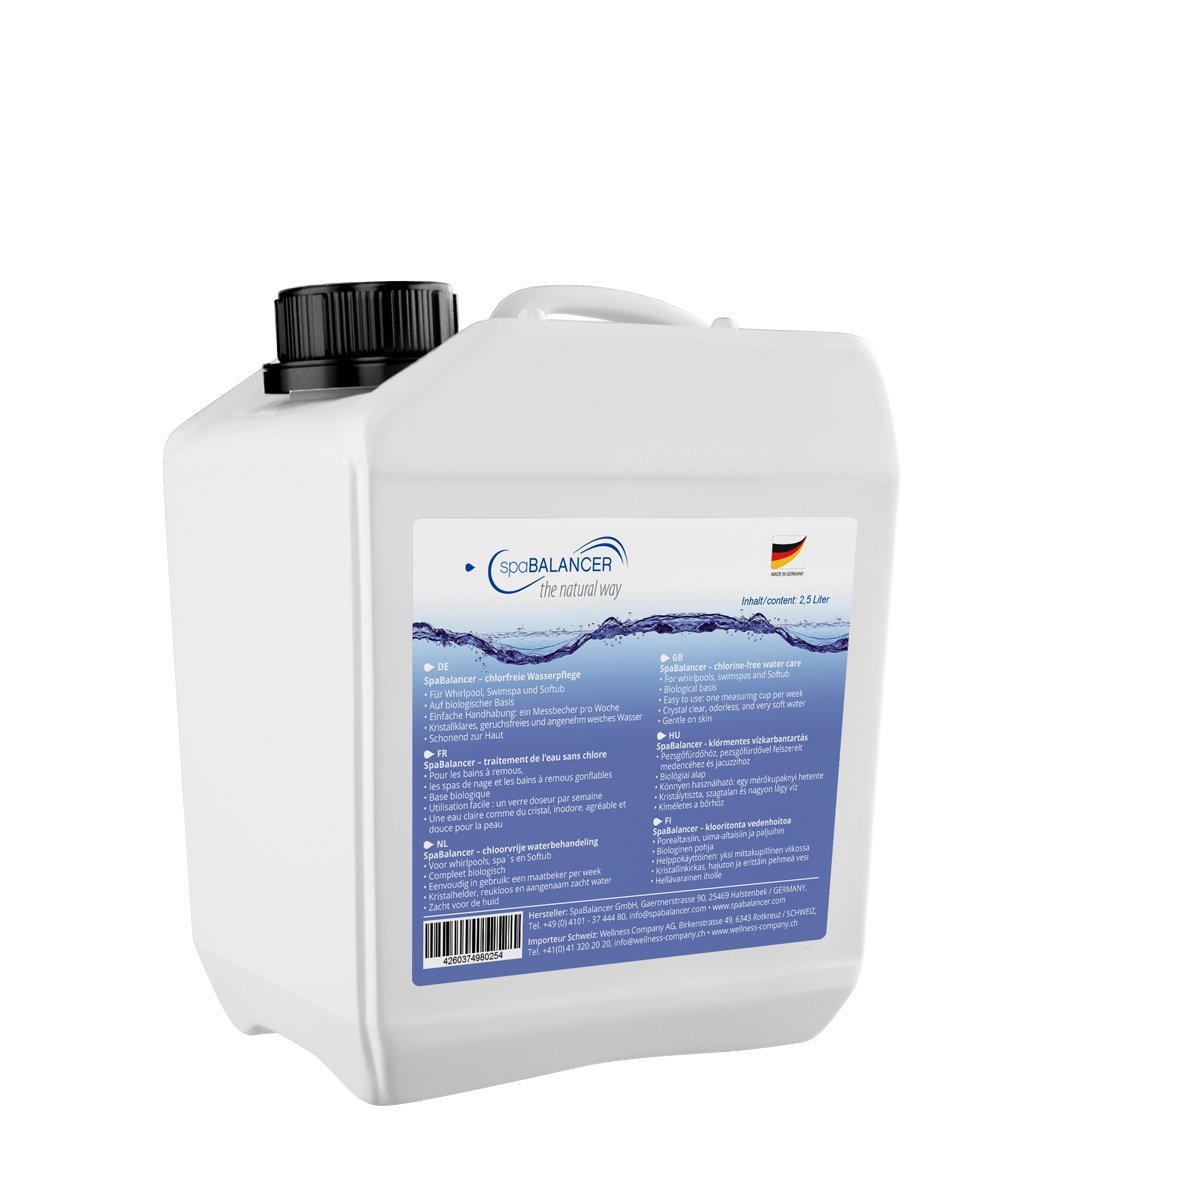 SpaBalancer im 2,5 Liter Vorteilskanister ideal für Swimspas und Whirlpools